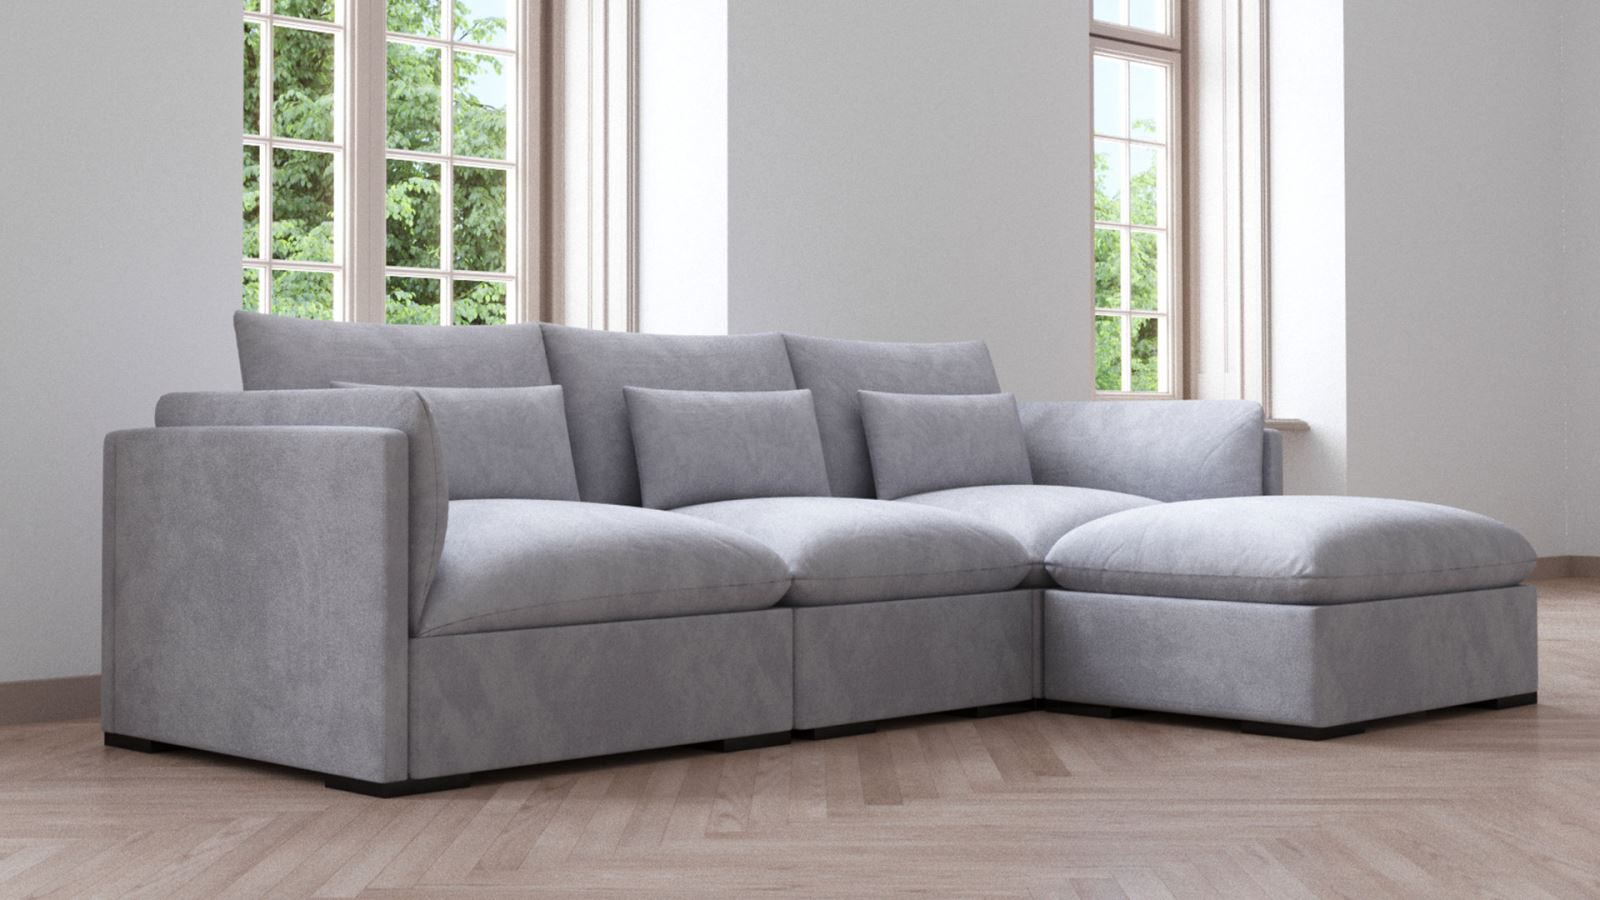 Mẫu ghế sofa nào thích hợp sử dụng cho nhà chung cư nhất bạn có biết?